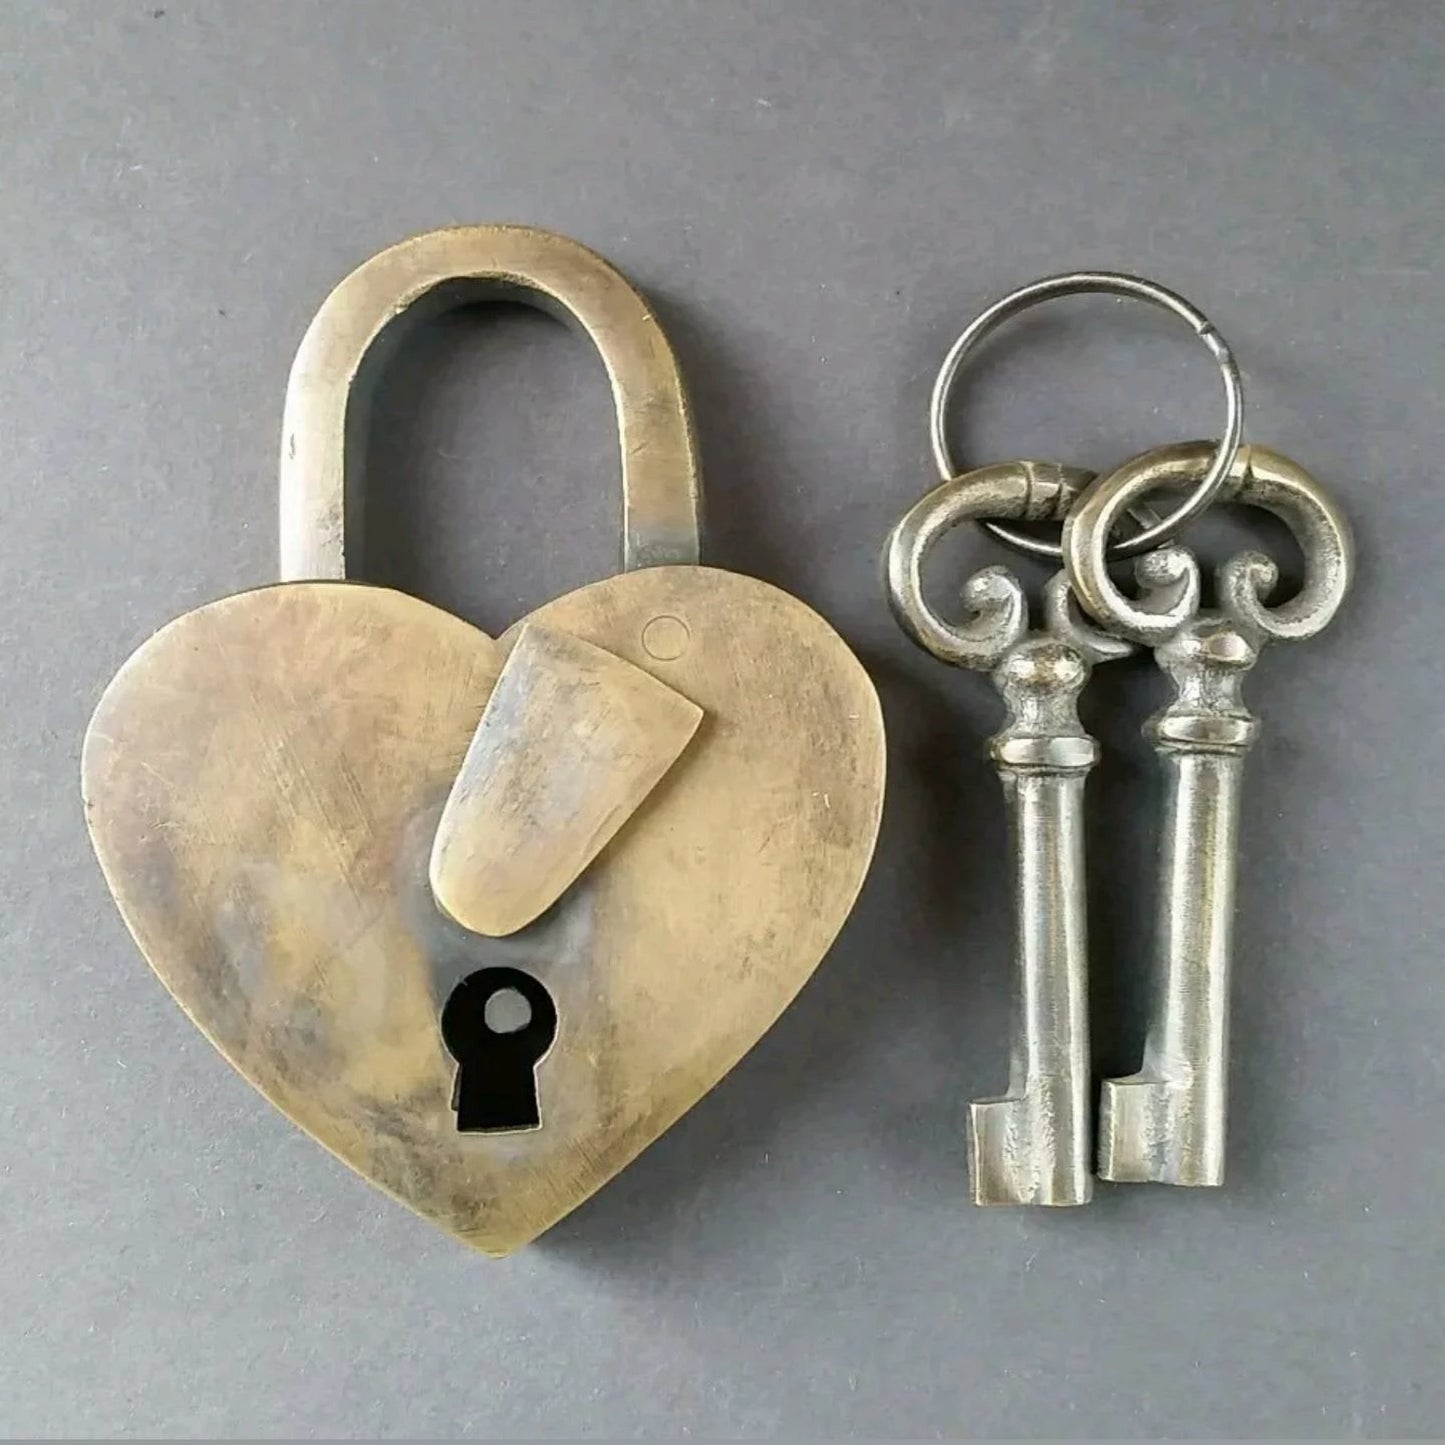 Heart Shaped Love Lock, Commitment, Paris Bridge, Valentine, w.2 Ornate Keys Solid Quality Brass #L1